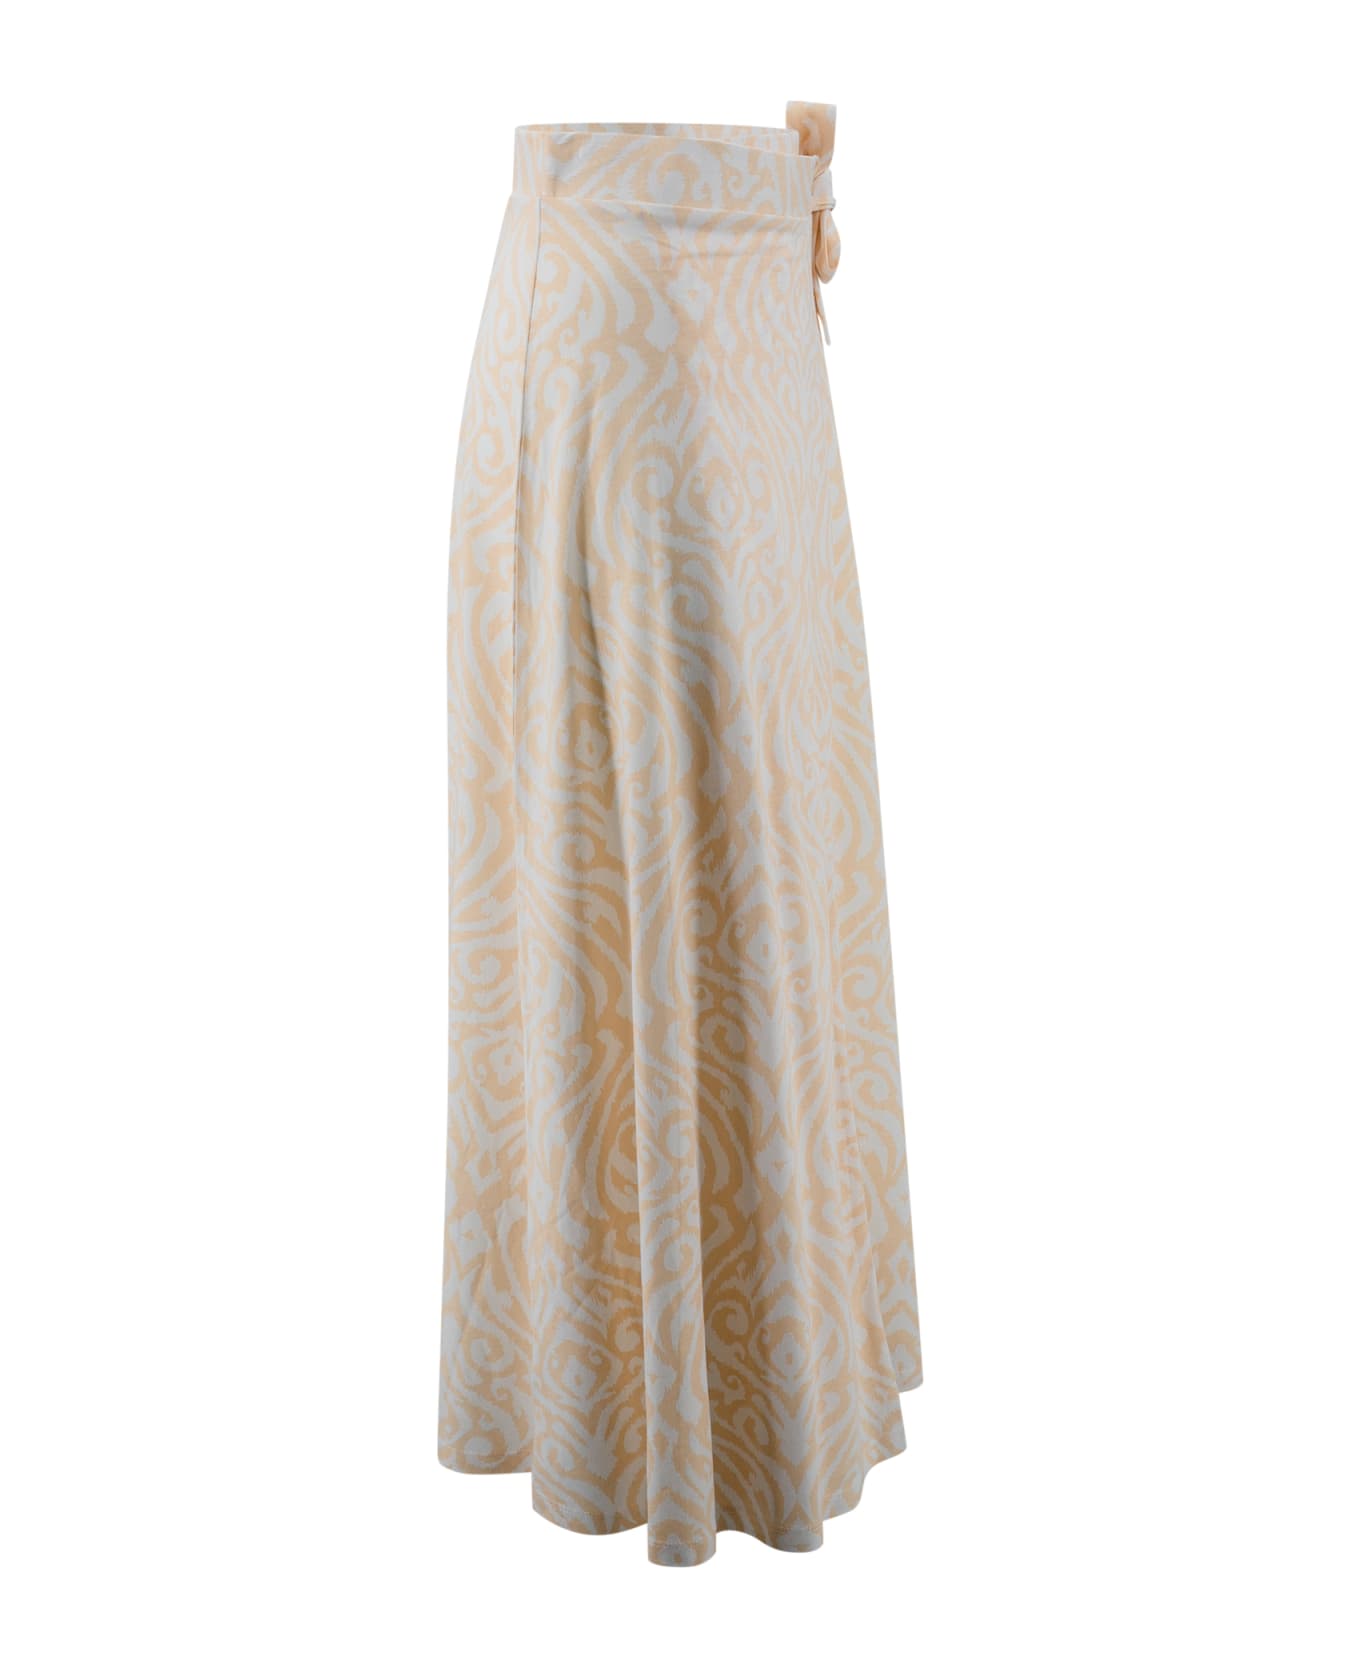 Surkana Long Printed Crisscross Skirt - Crudo